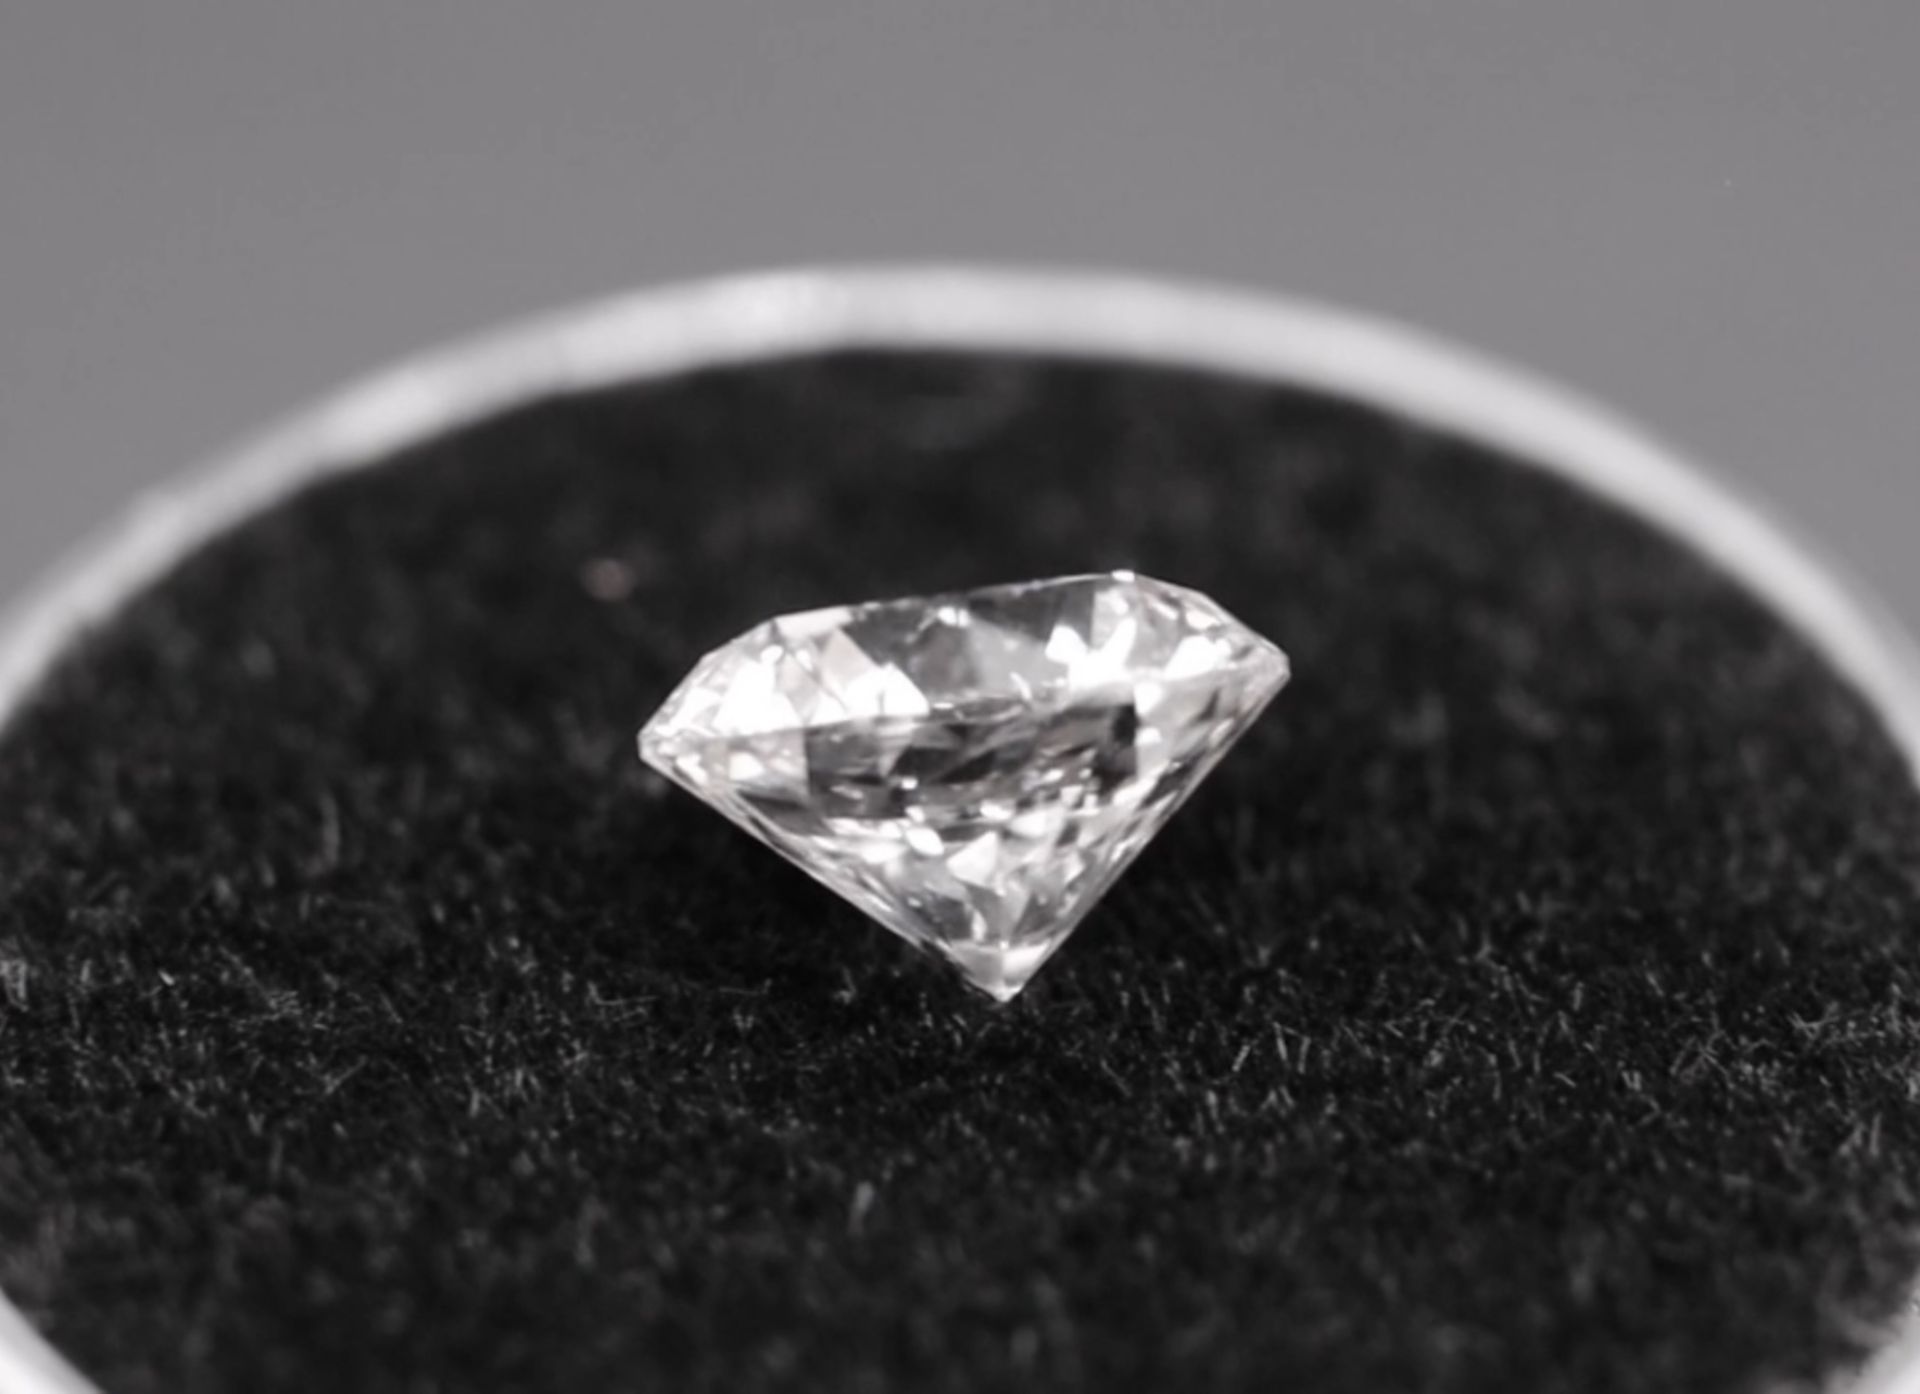 Single - Round Brilliant Cut Natural Diamond 2.05 Carat Colour E Clarity VS2 - AGI Certificate